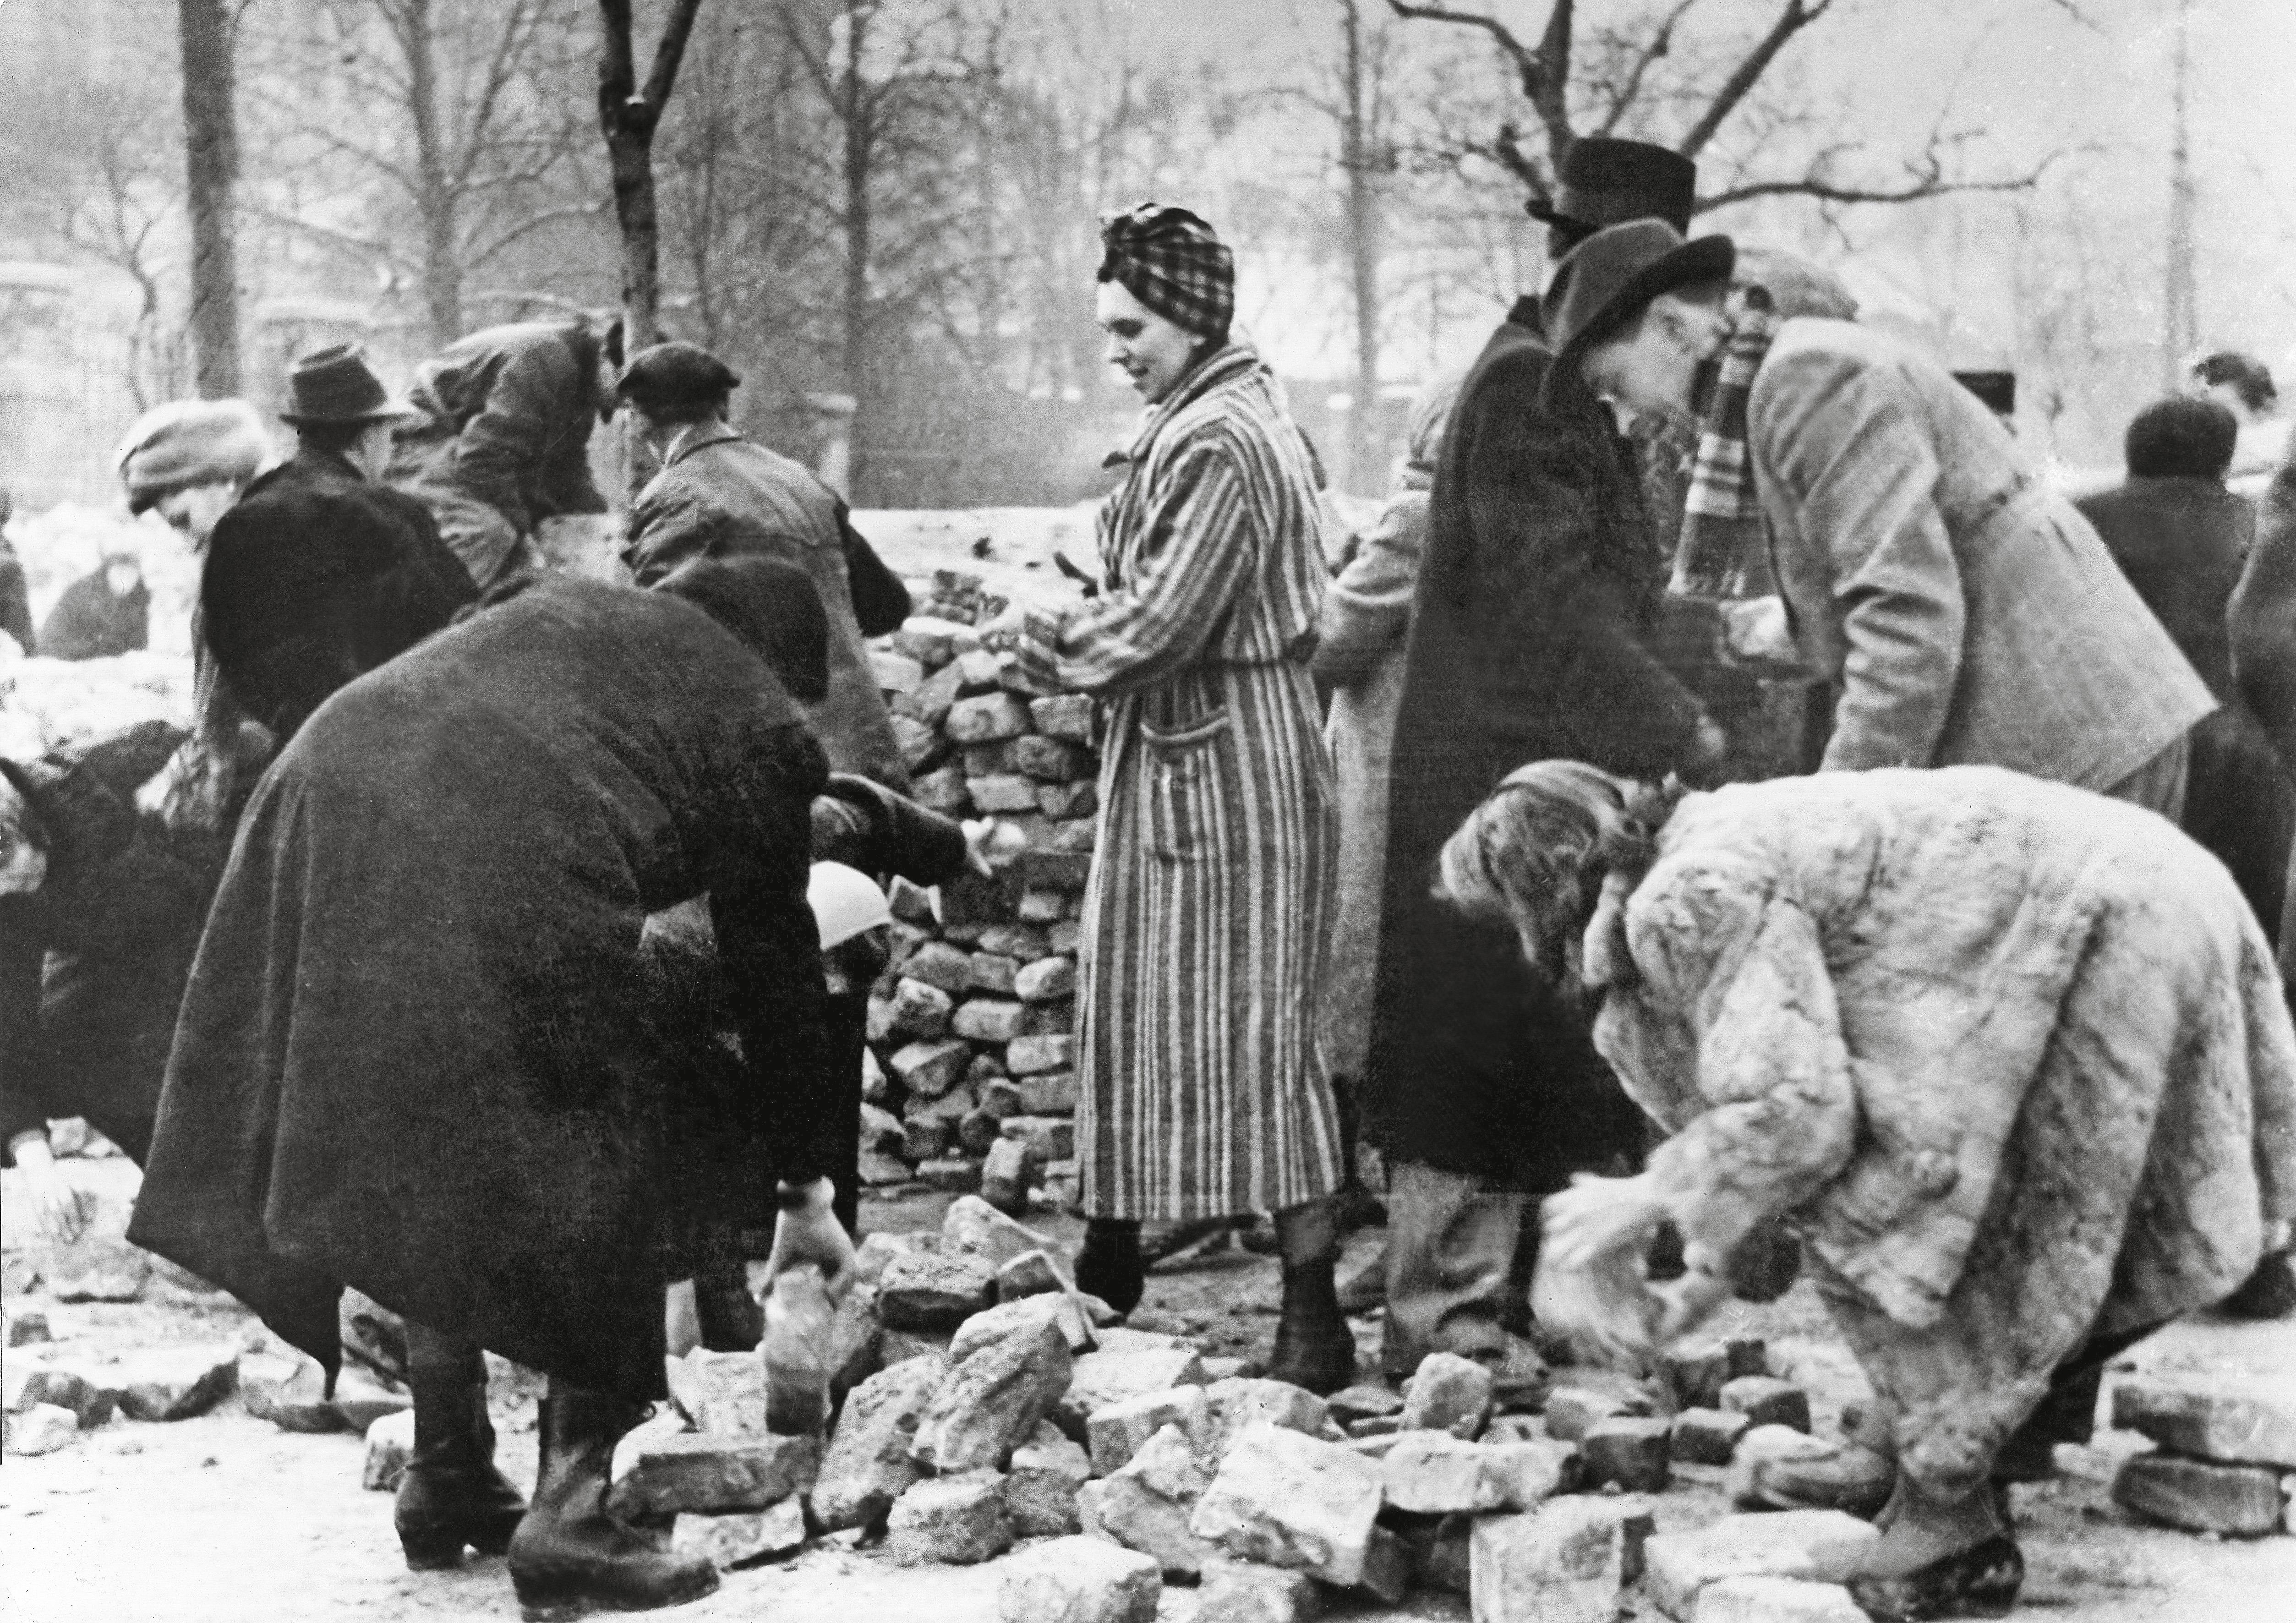 Walki o Budapeszt, cywile przy budowie barykady, zima 1945 r.